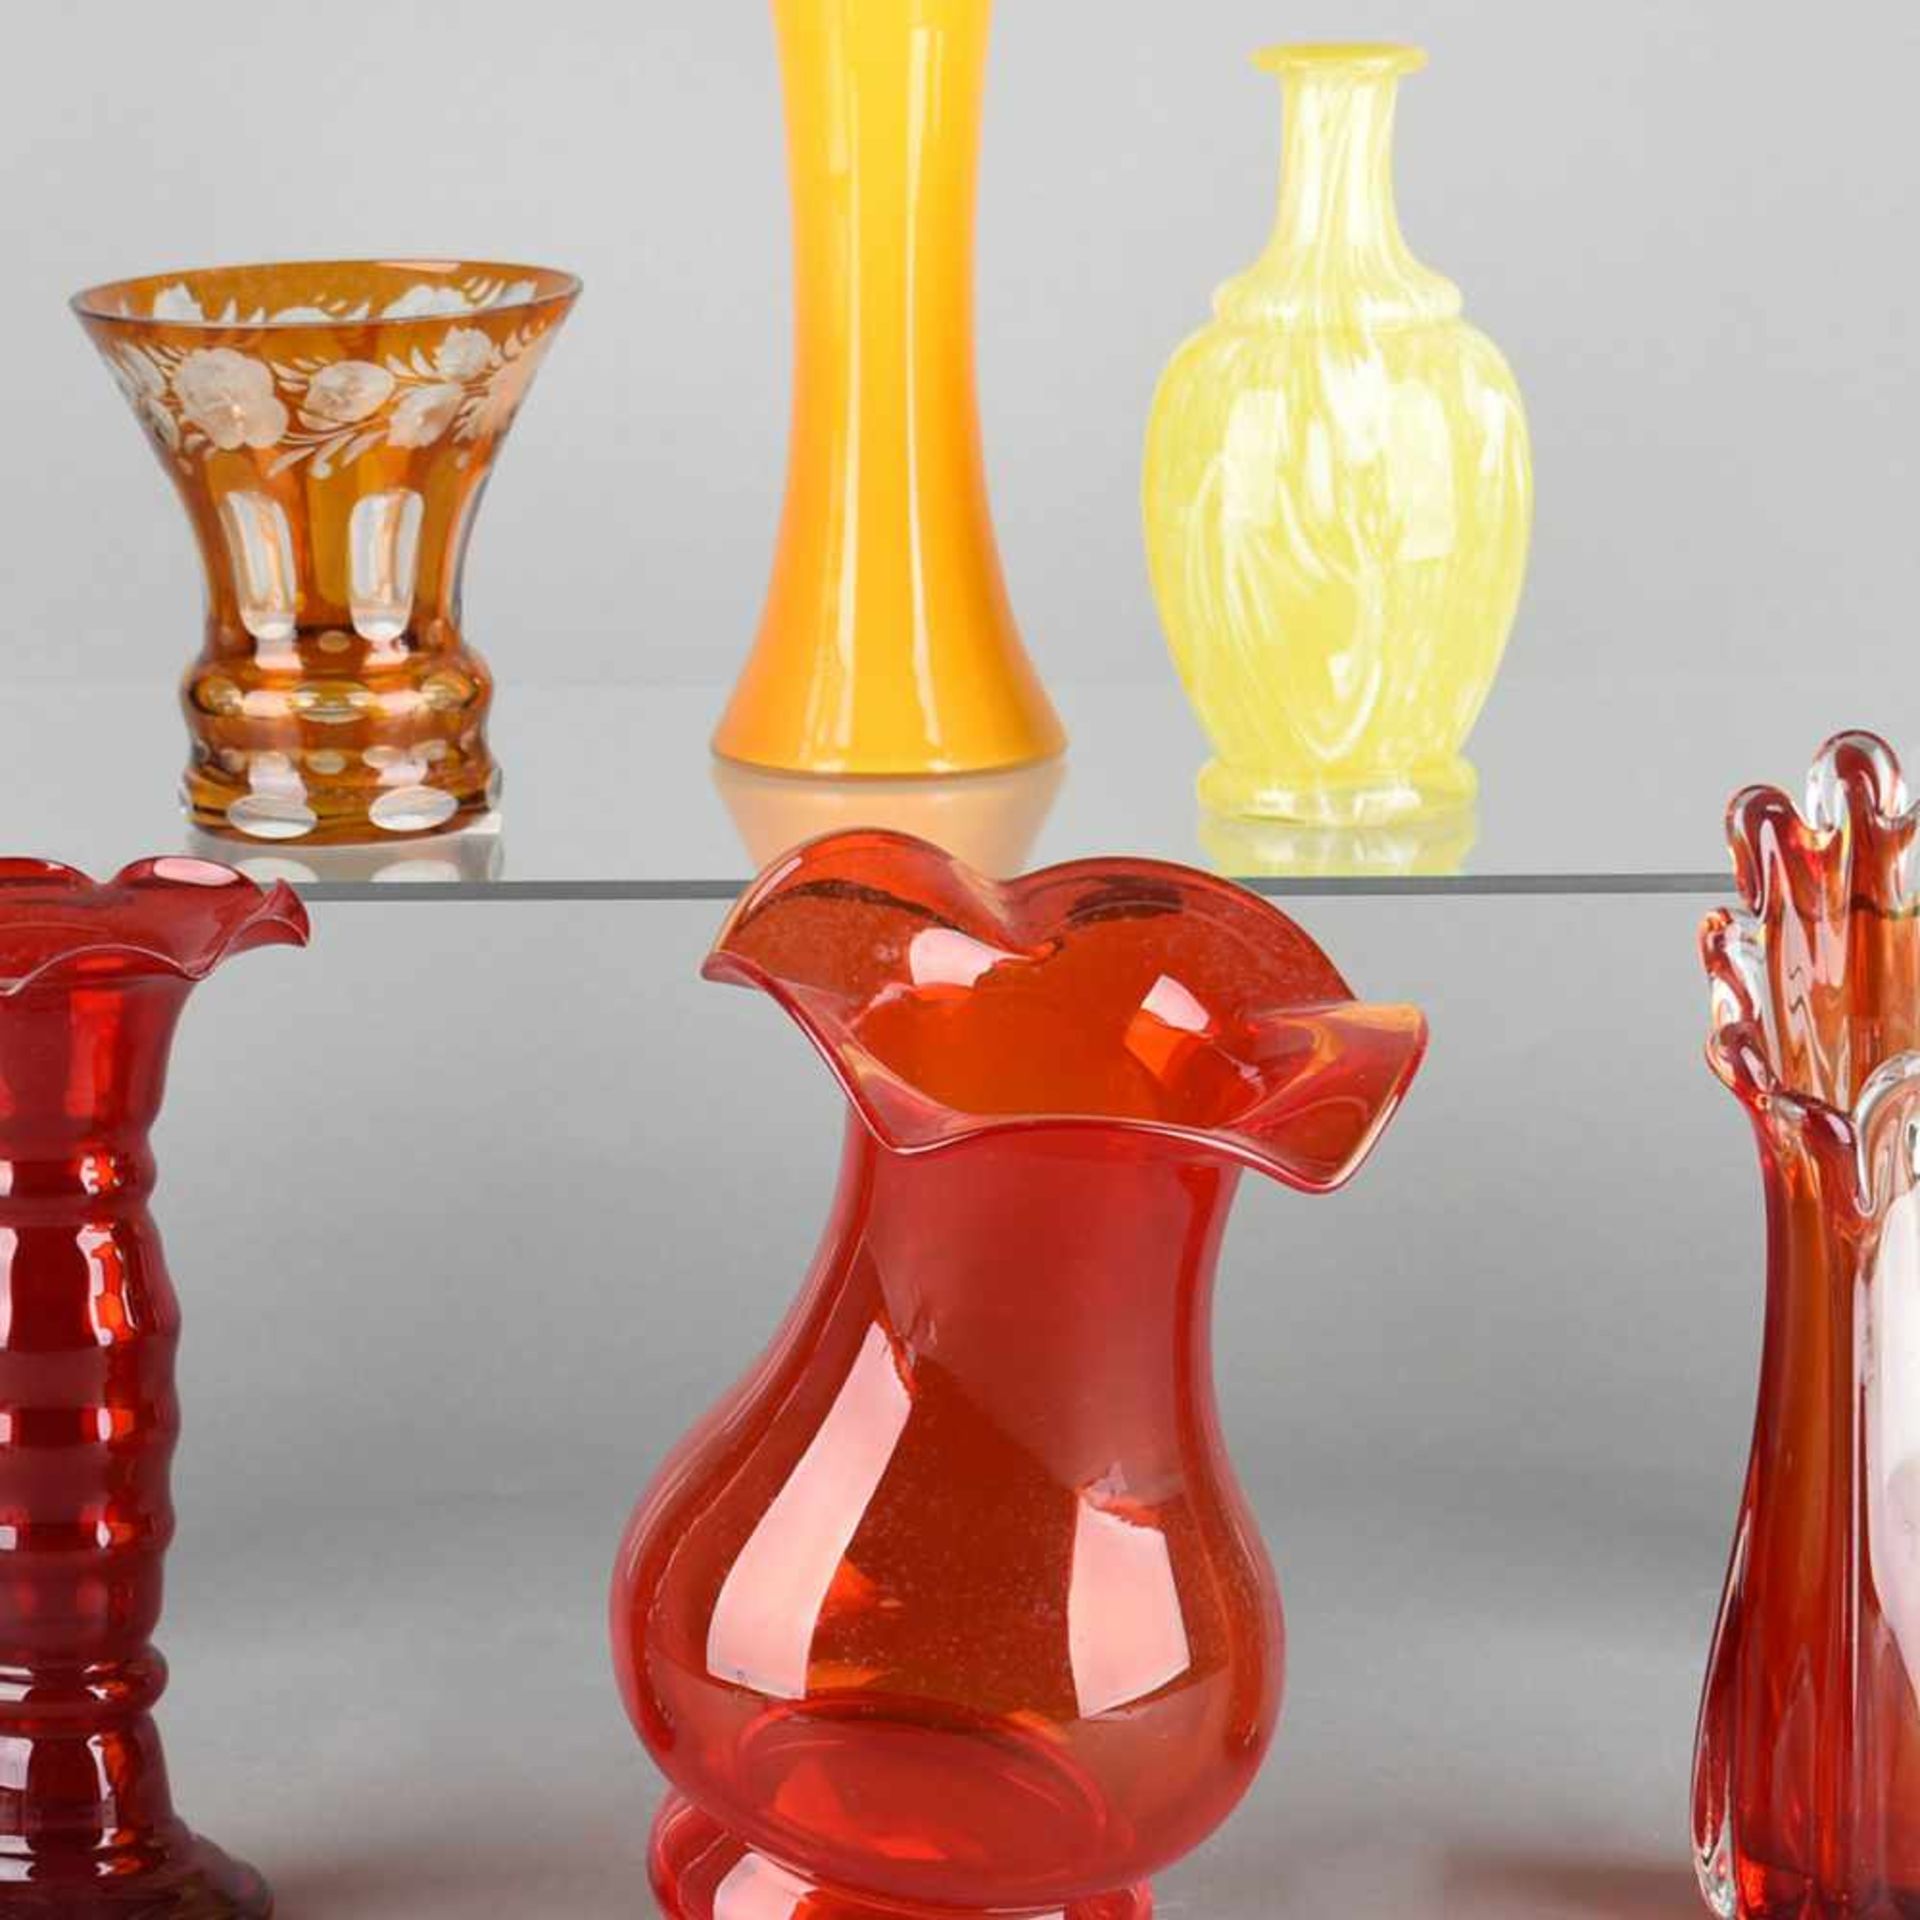 Konvolut Vasen insg. 6 Stück, Stangen-, Trichter- und gebauchte Formen in Rot- und Gelbtönen